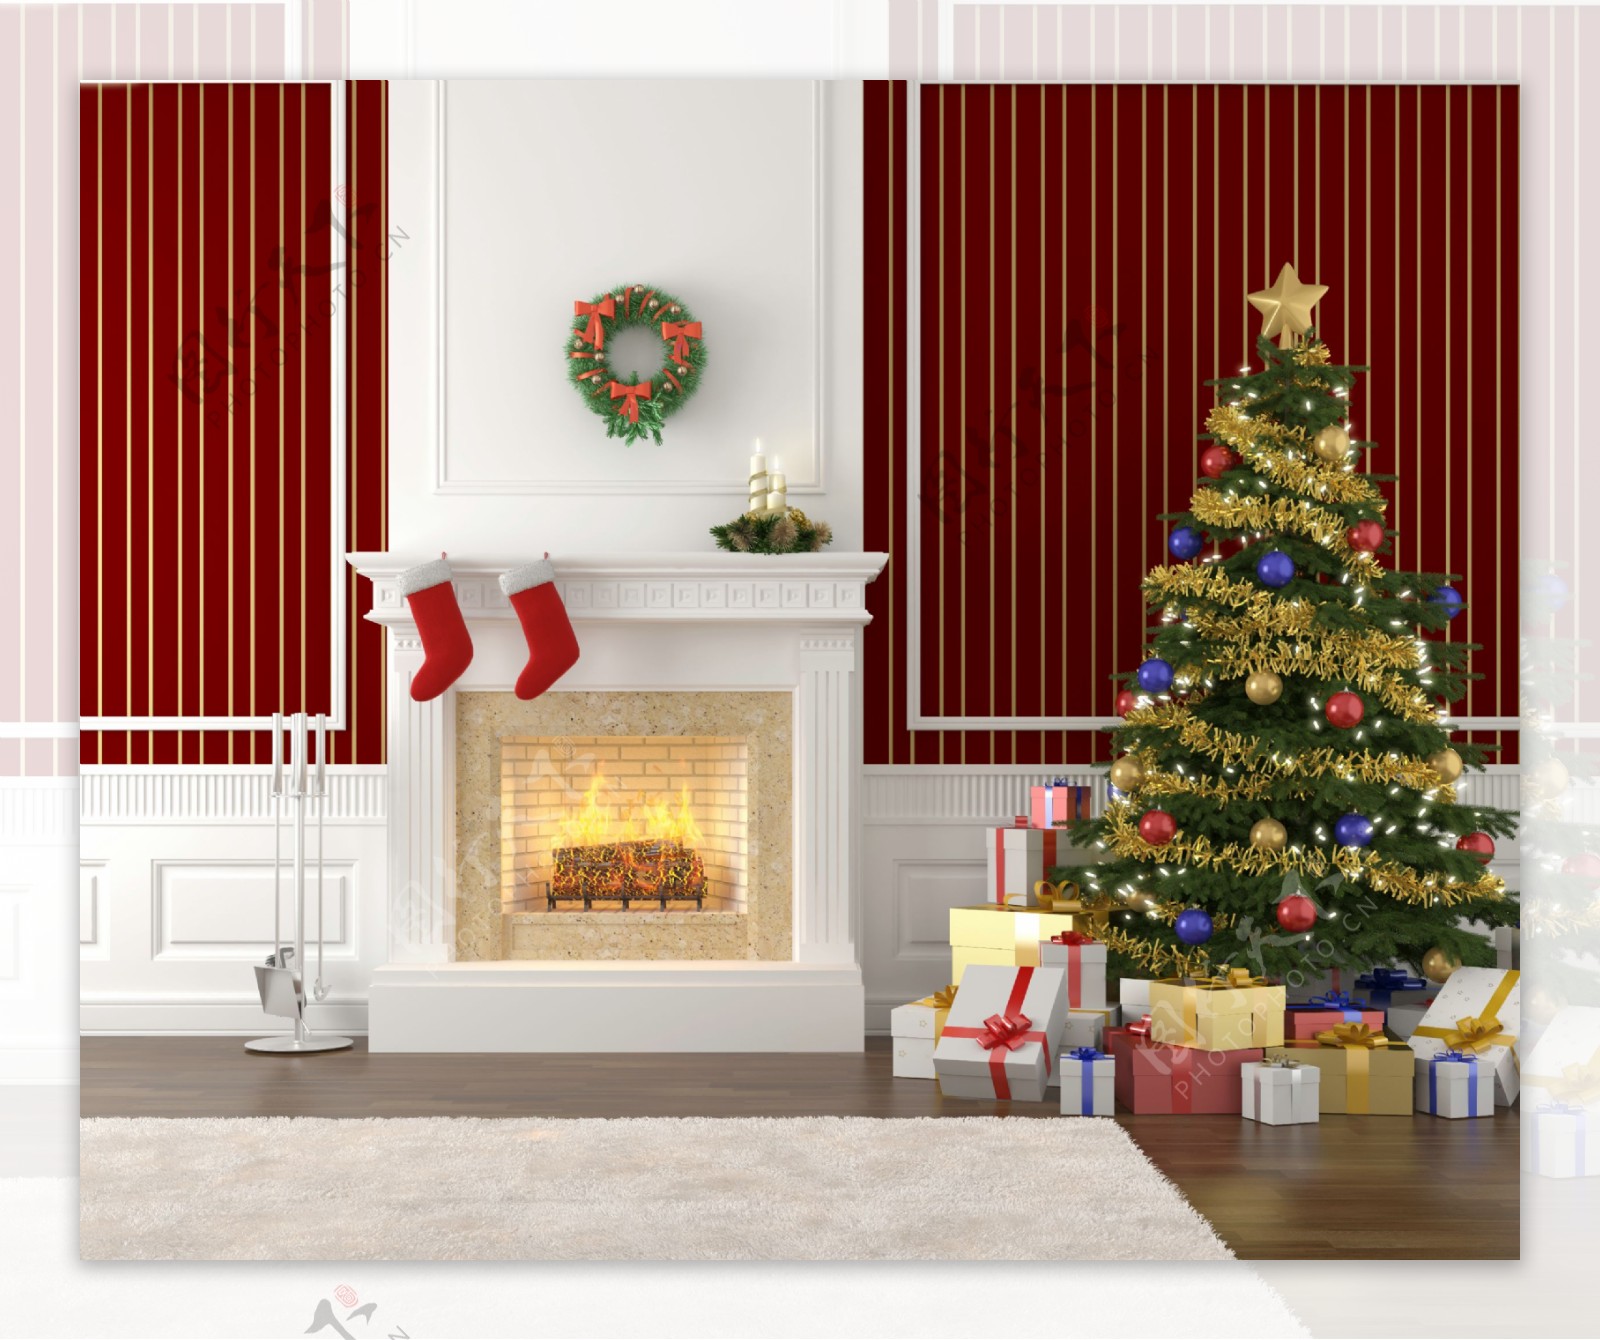 壁炉挂毯和圣诞树